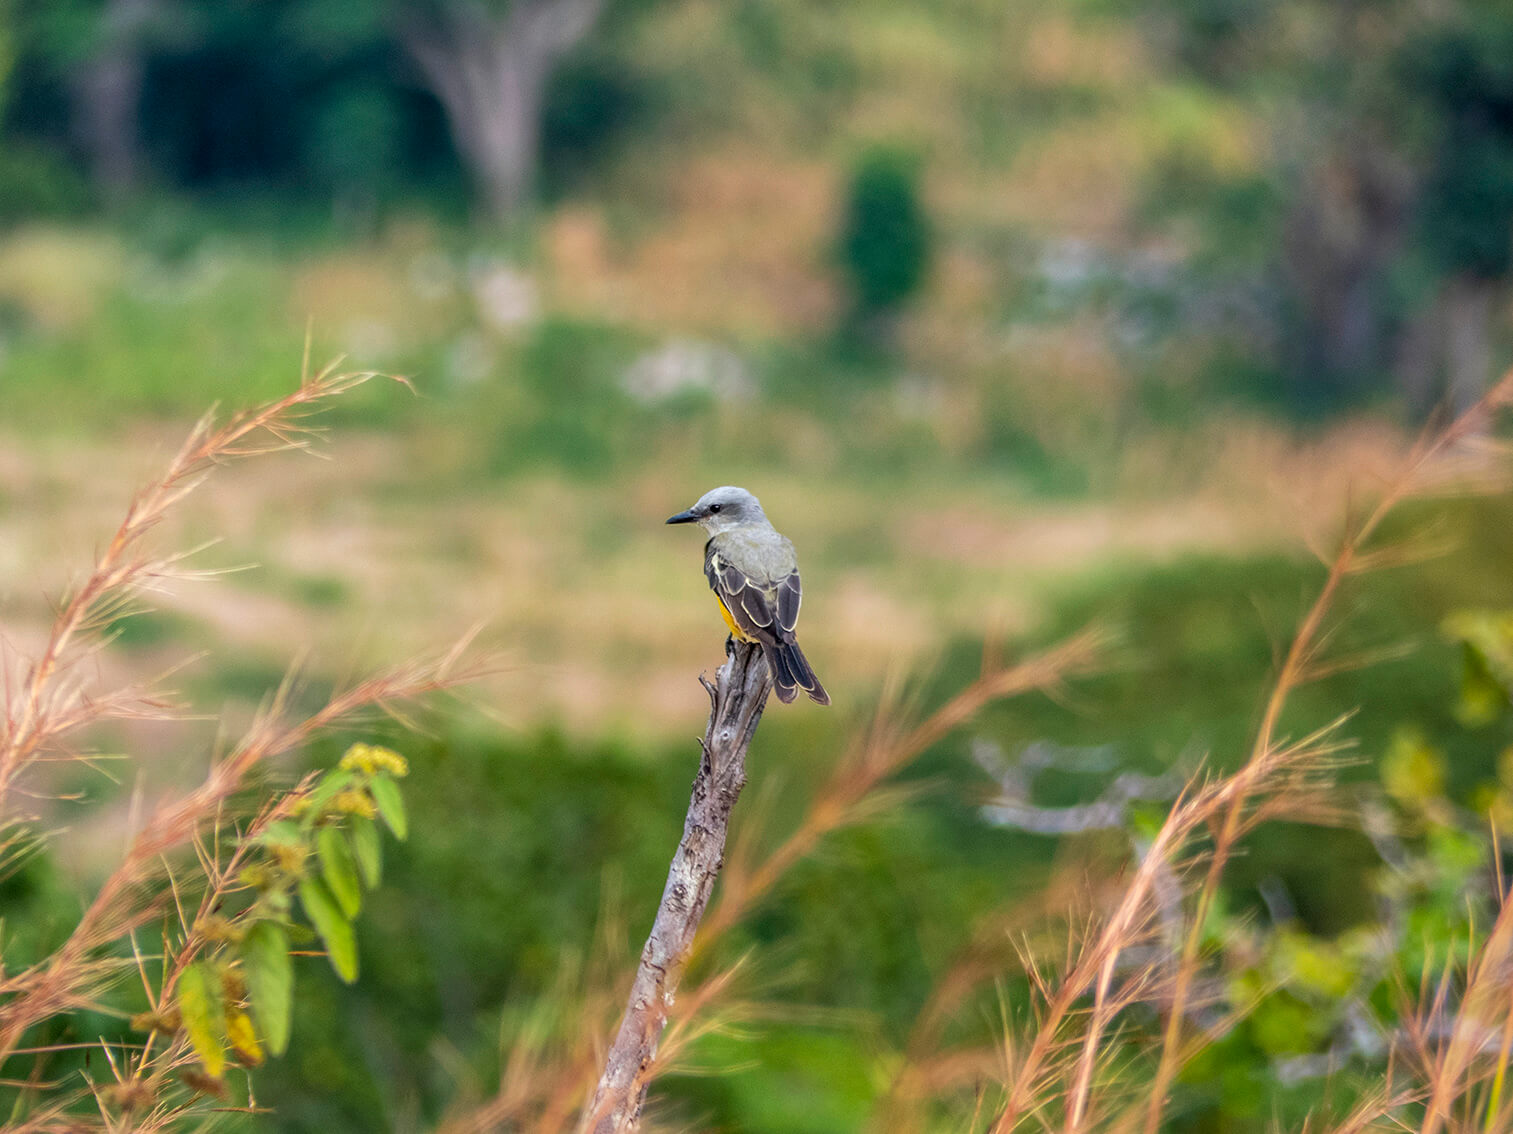 En la Serranía del Perijá, un pájaro sirirí común se posa sobre una rama seca. El viento mueve el pasto a su alrededor.